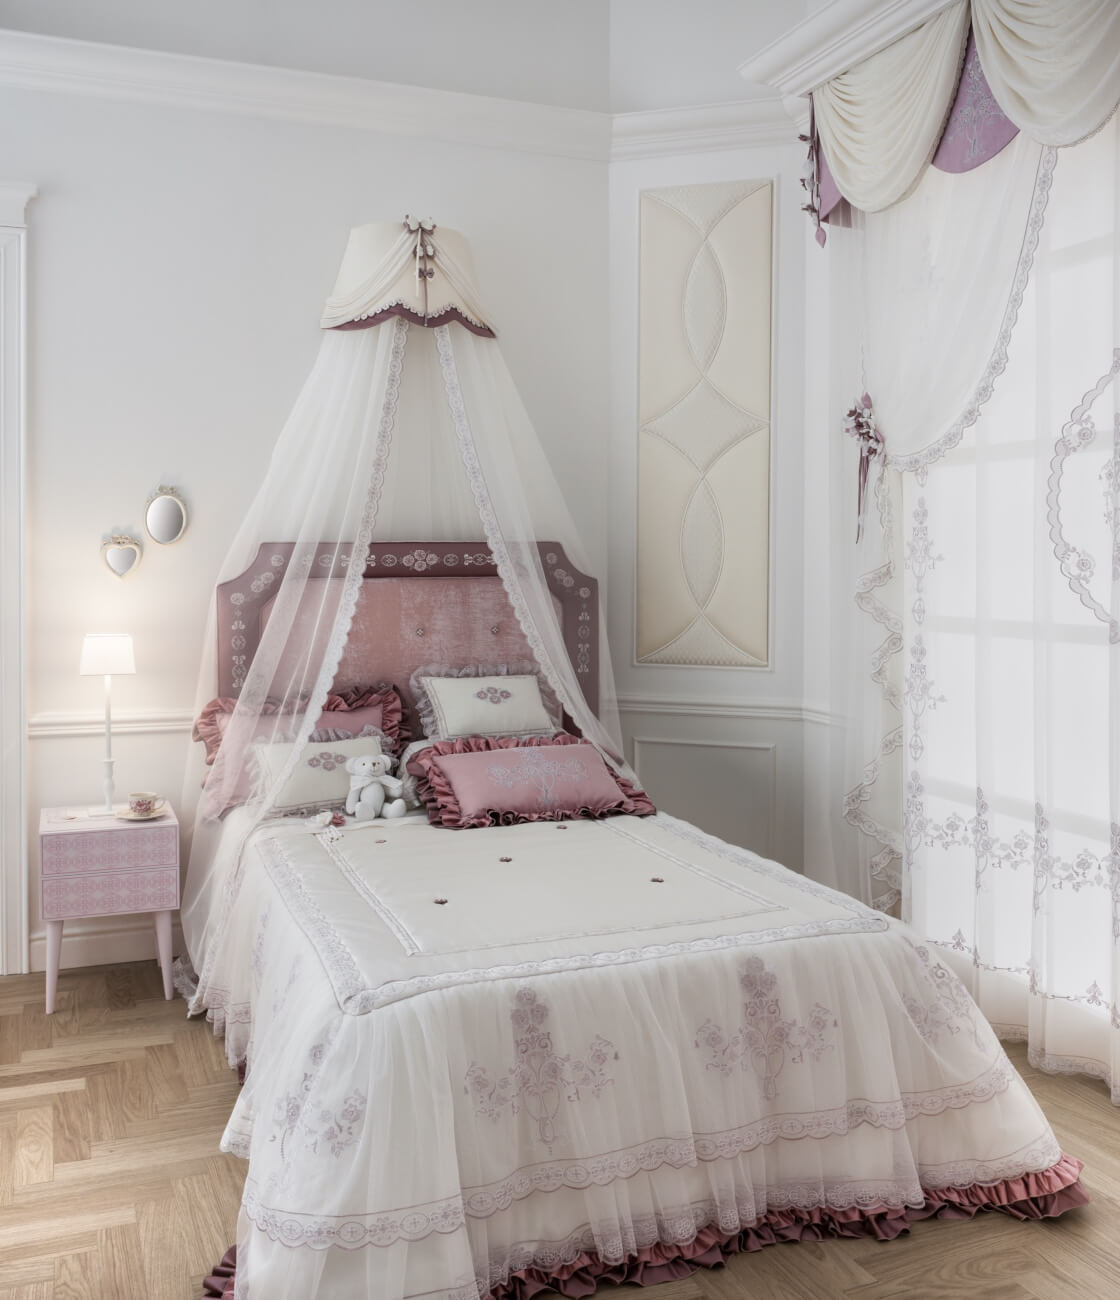 Фото элитных наборов штор и покрывал для спальни